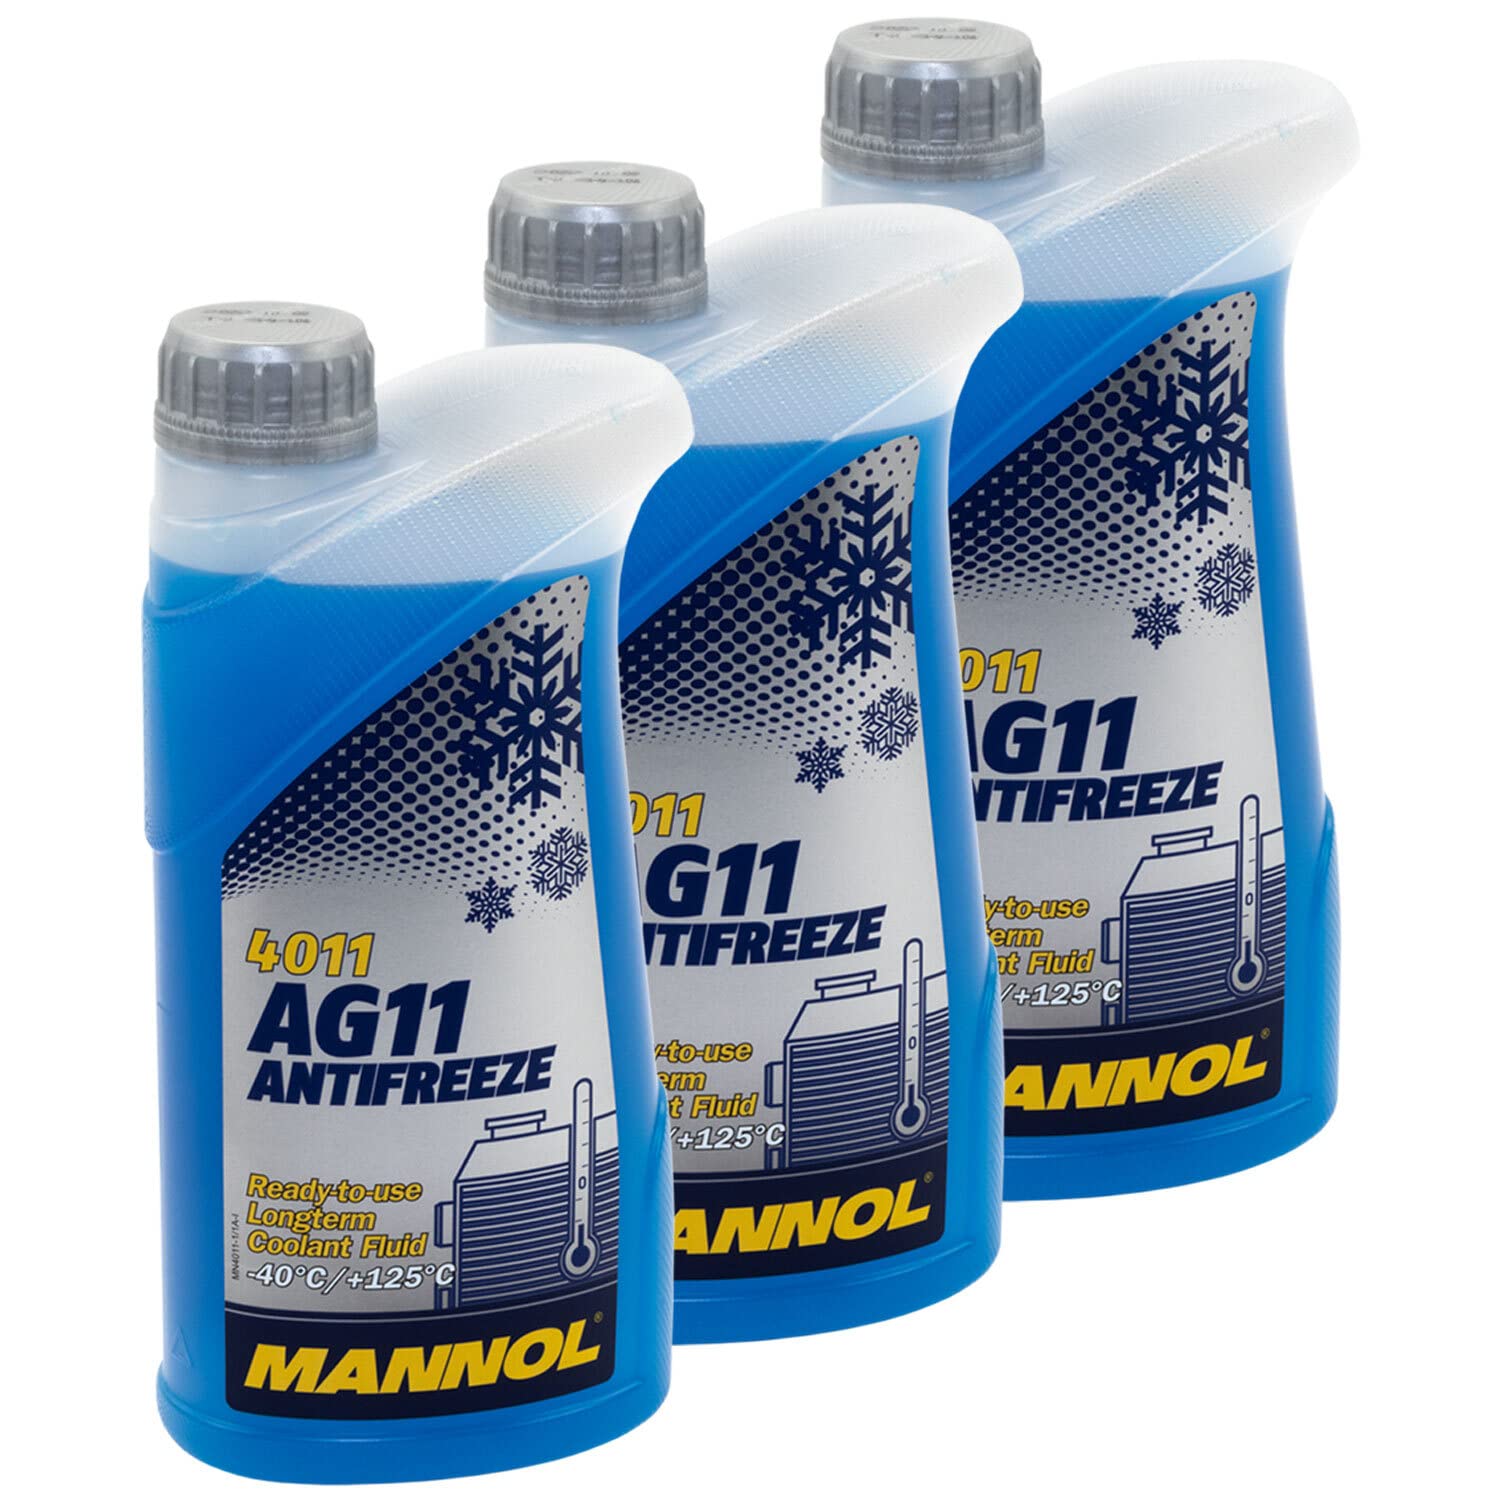 Kühlerfrostschutz MANNOL Longterm Antifreeze 3 X 1 Liter Fertiggemisch -40°C blau von MVH Bockauf